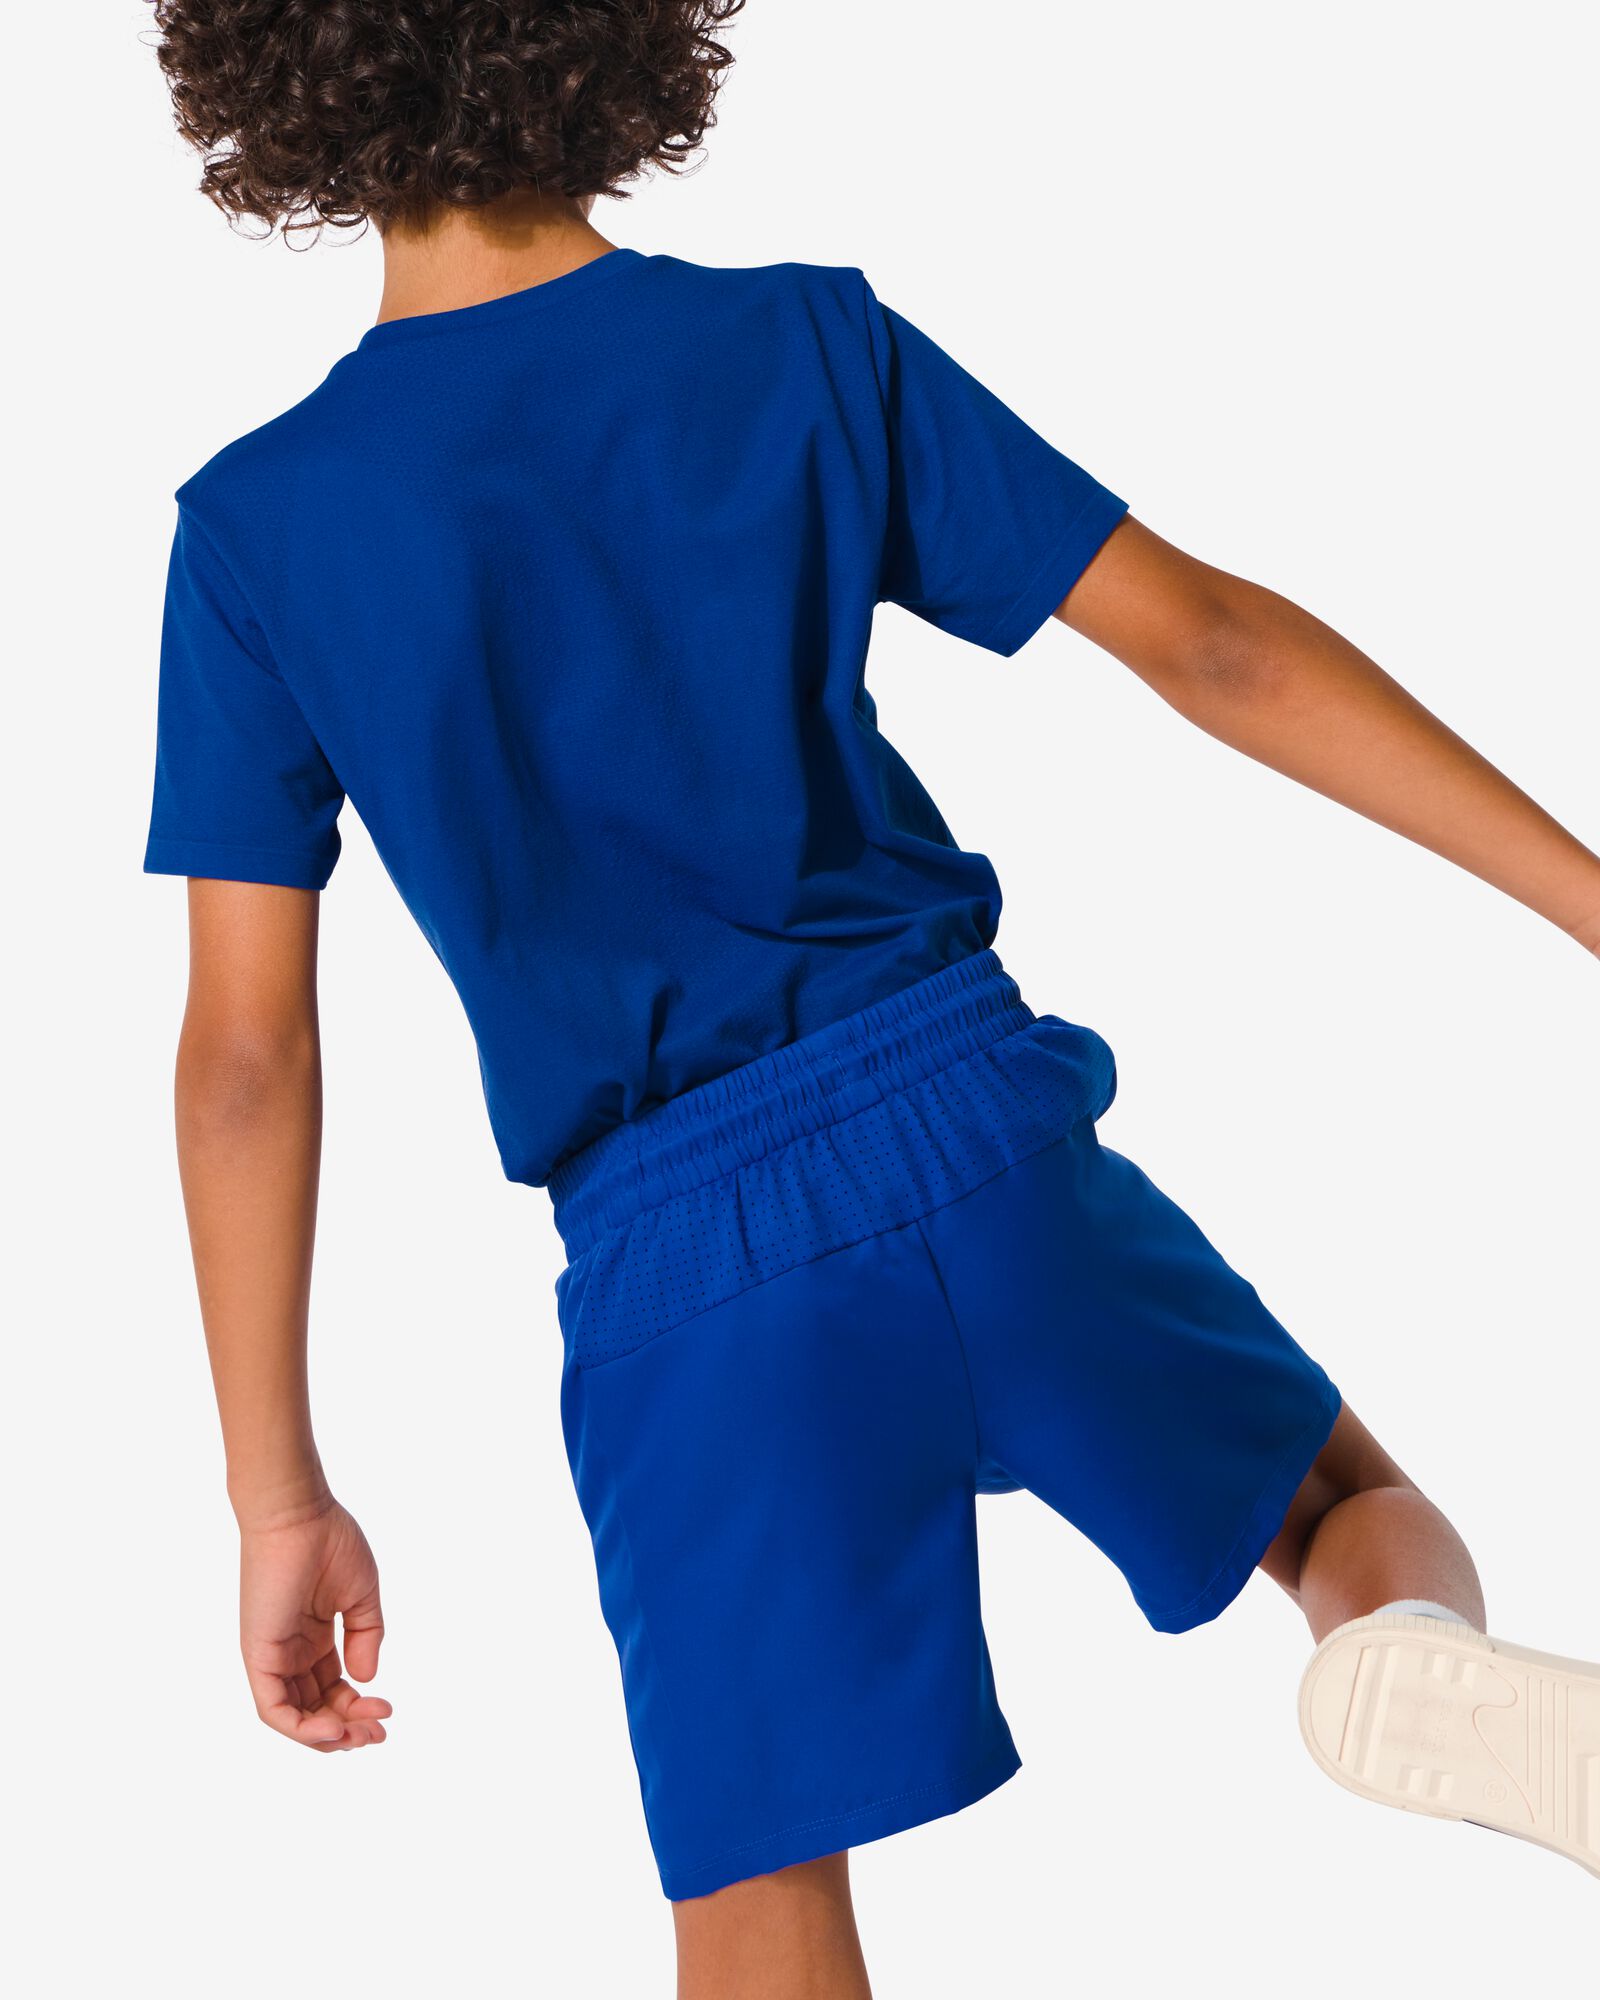 Kinder-Sporthose, kurz knallblau knallblau - 36090378BRIGHTBLUE - HEMA